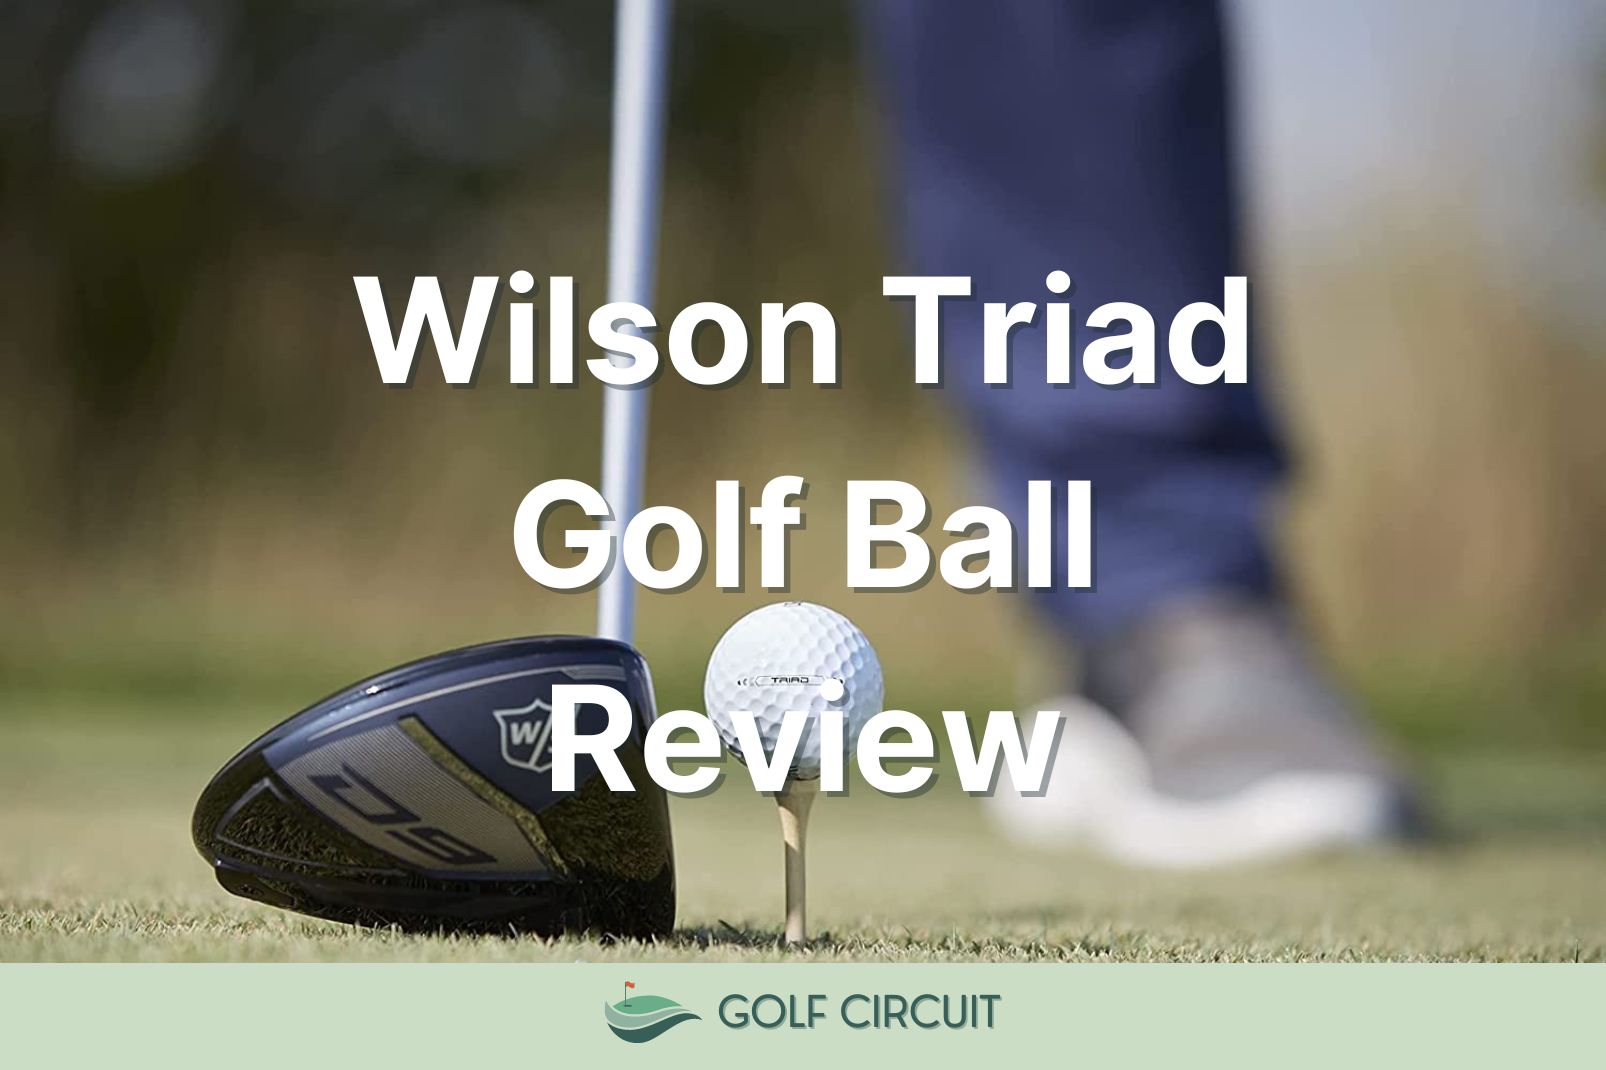 Wilson Triad Golf Ball Review